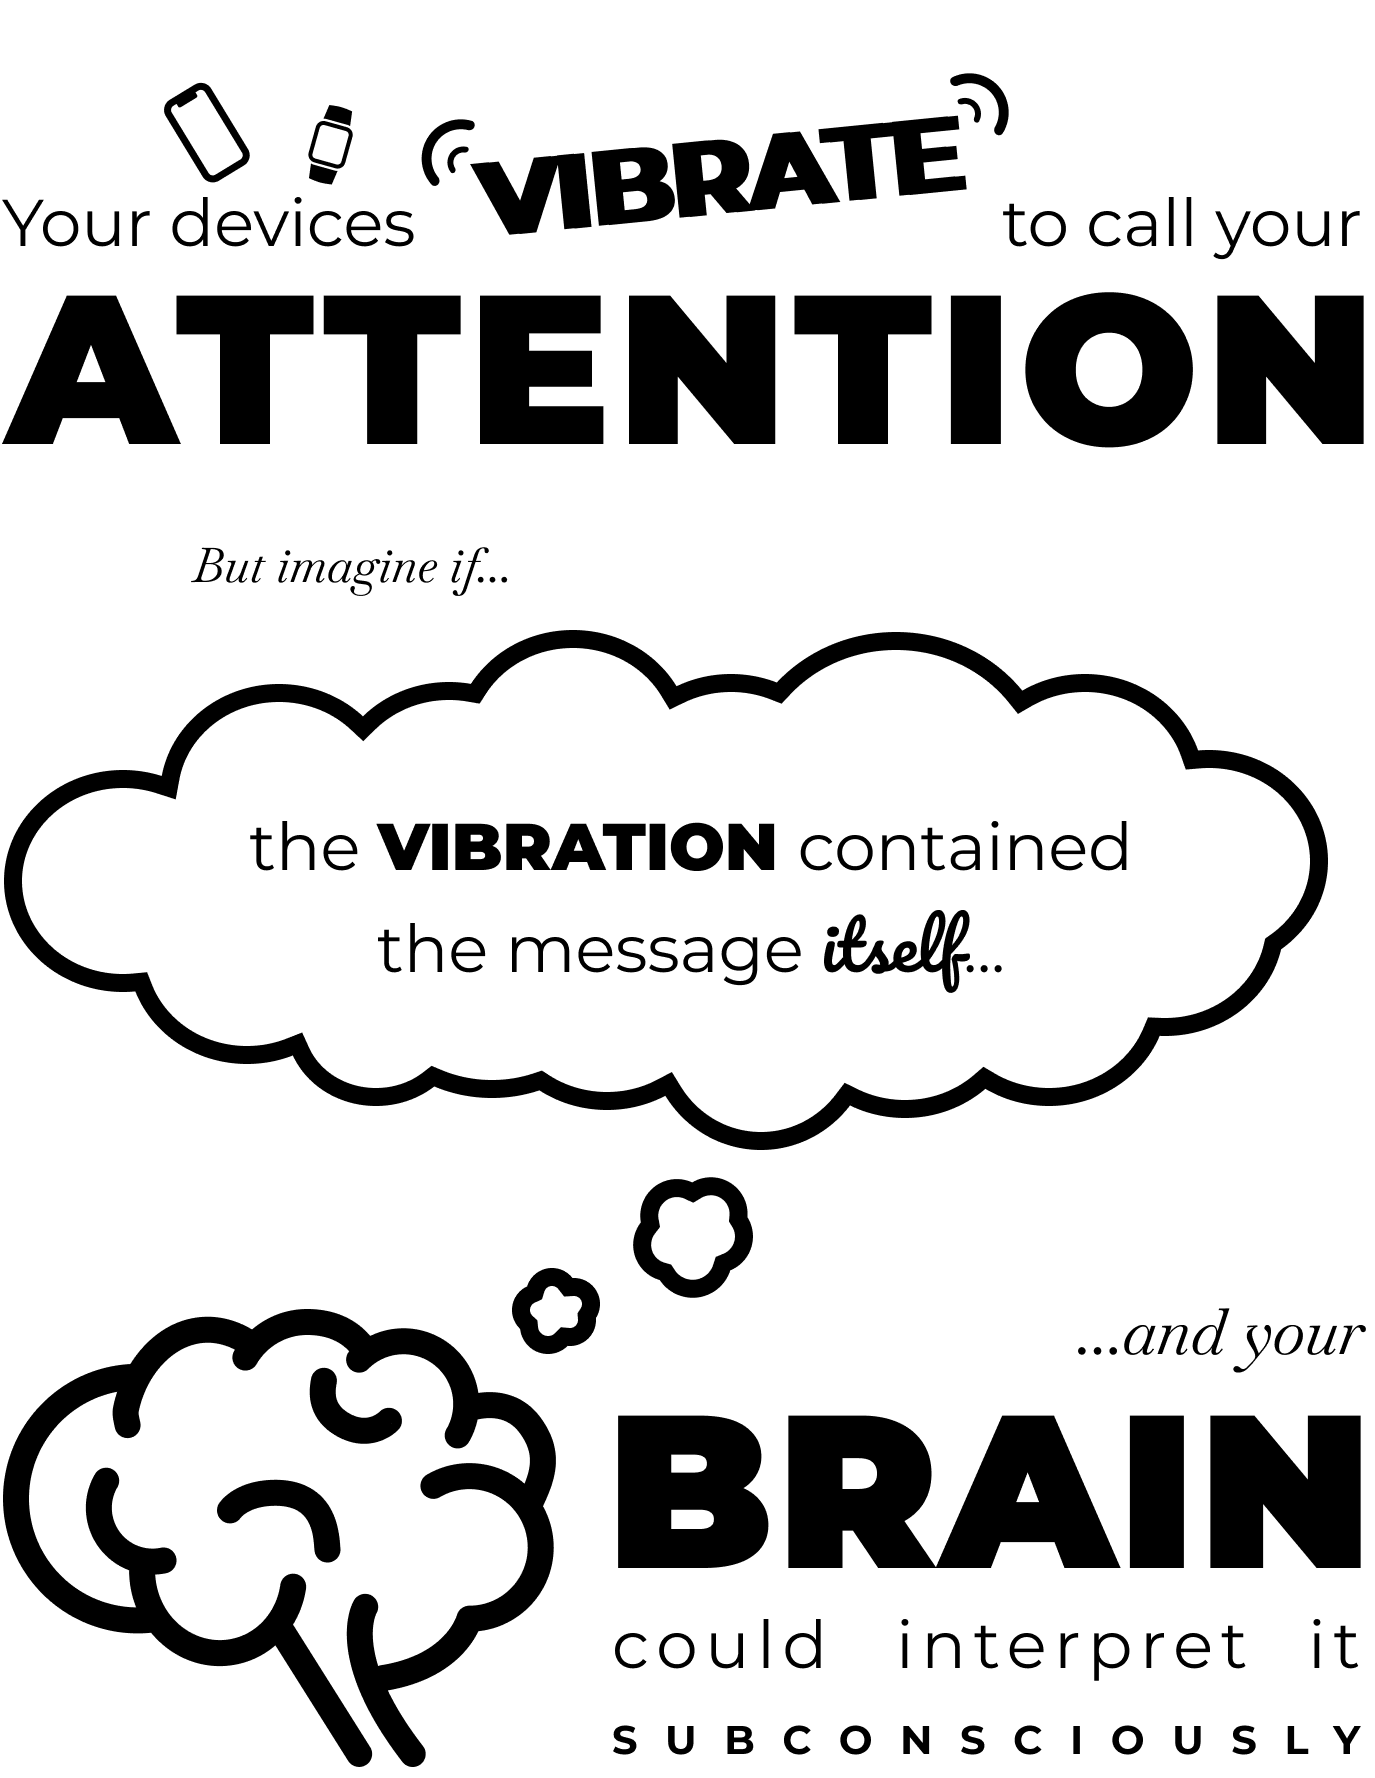 Dina enheter vibrerar för att kalla på din uppmärksamhet. Men föreställ dig att vibrationerna innehöll själva meddelandet och att din hjärna kunde tolka det undermedvetet.